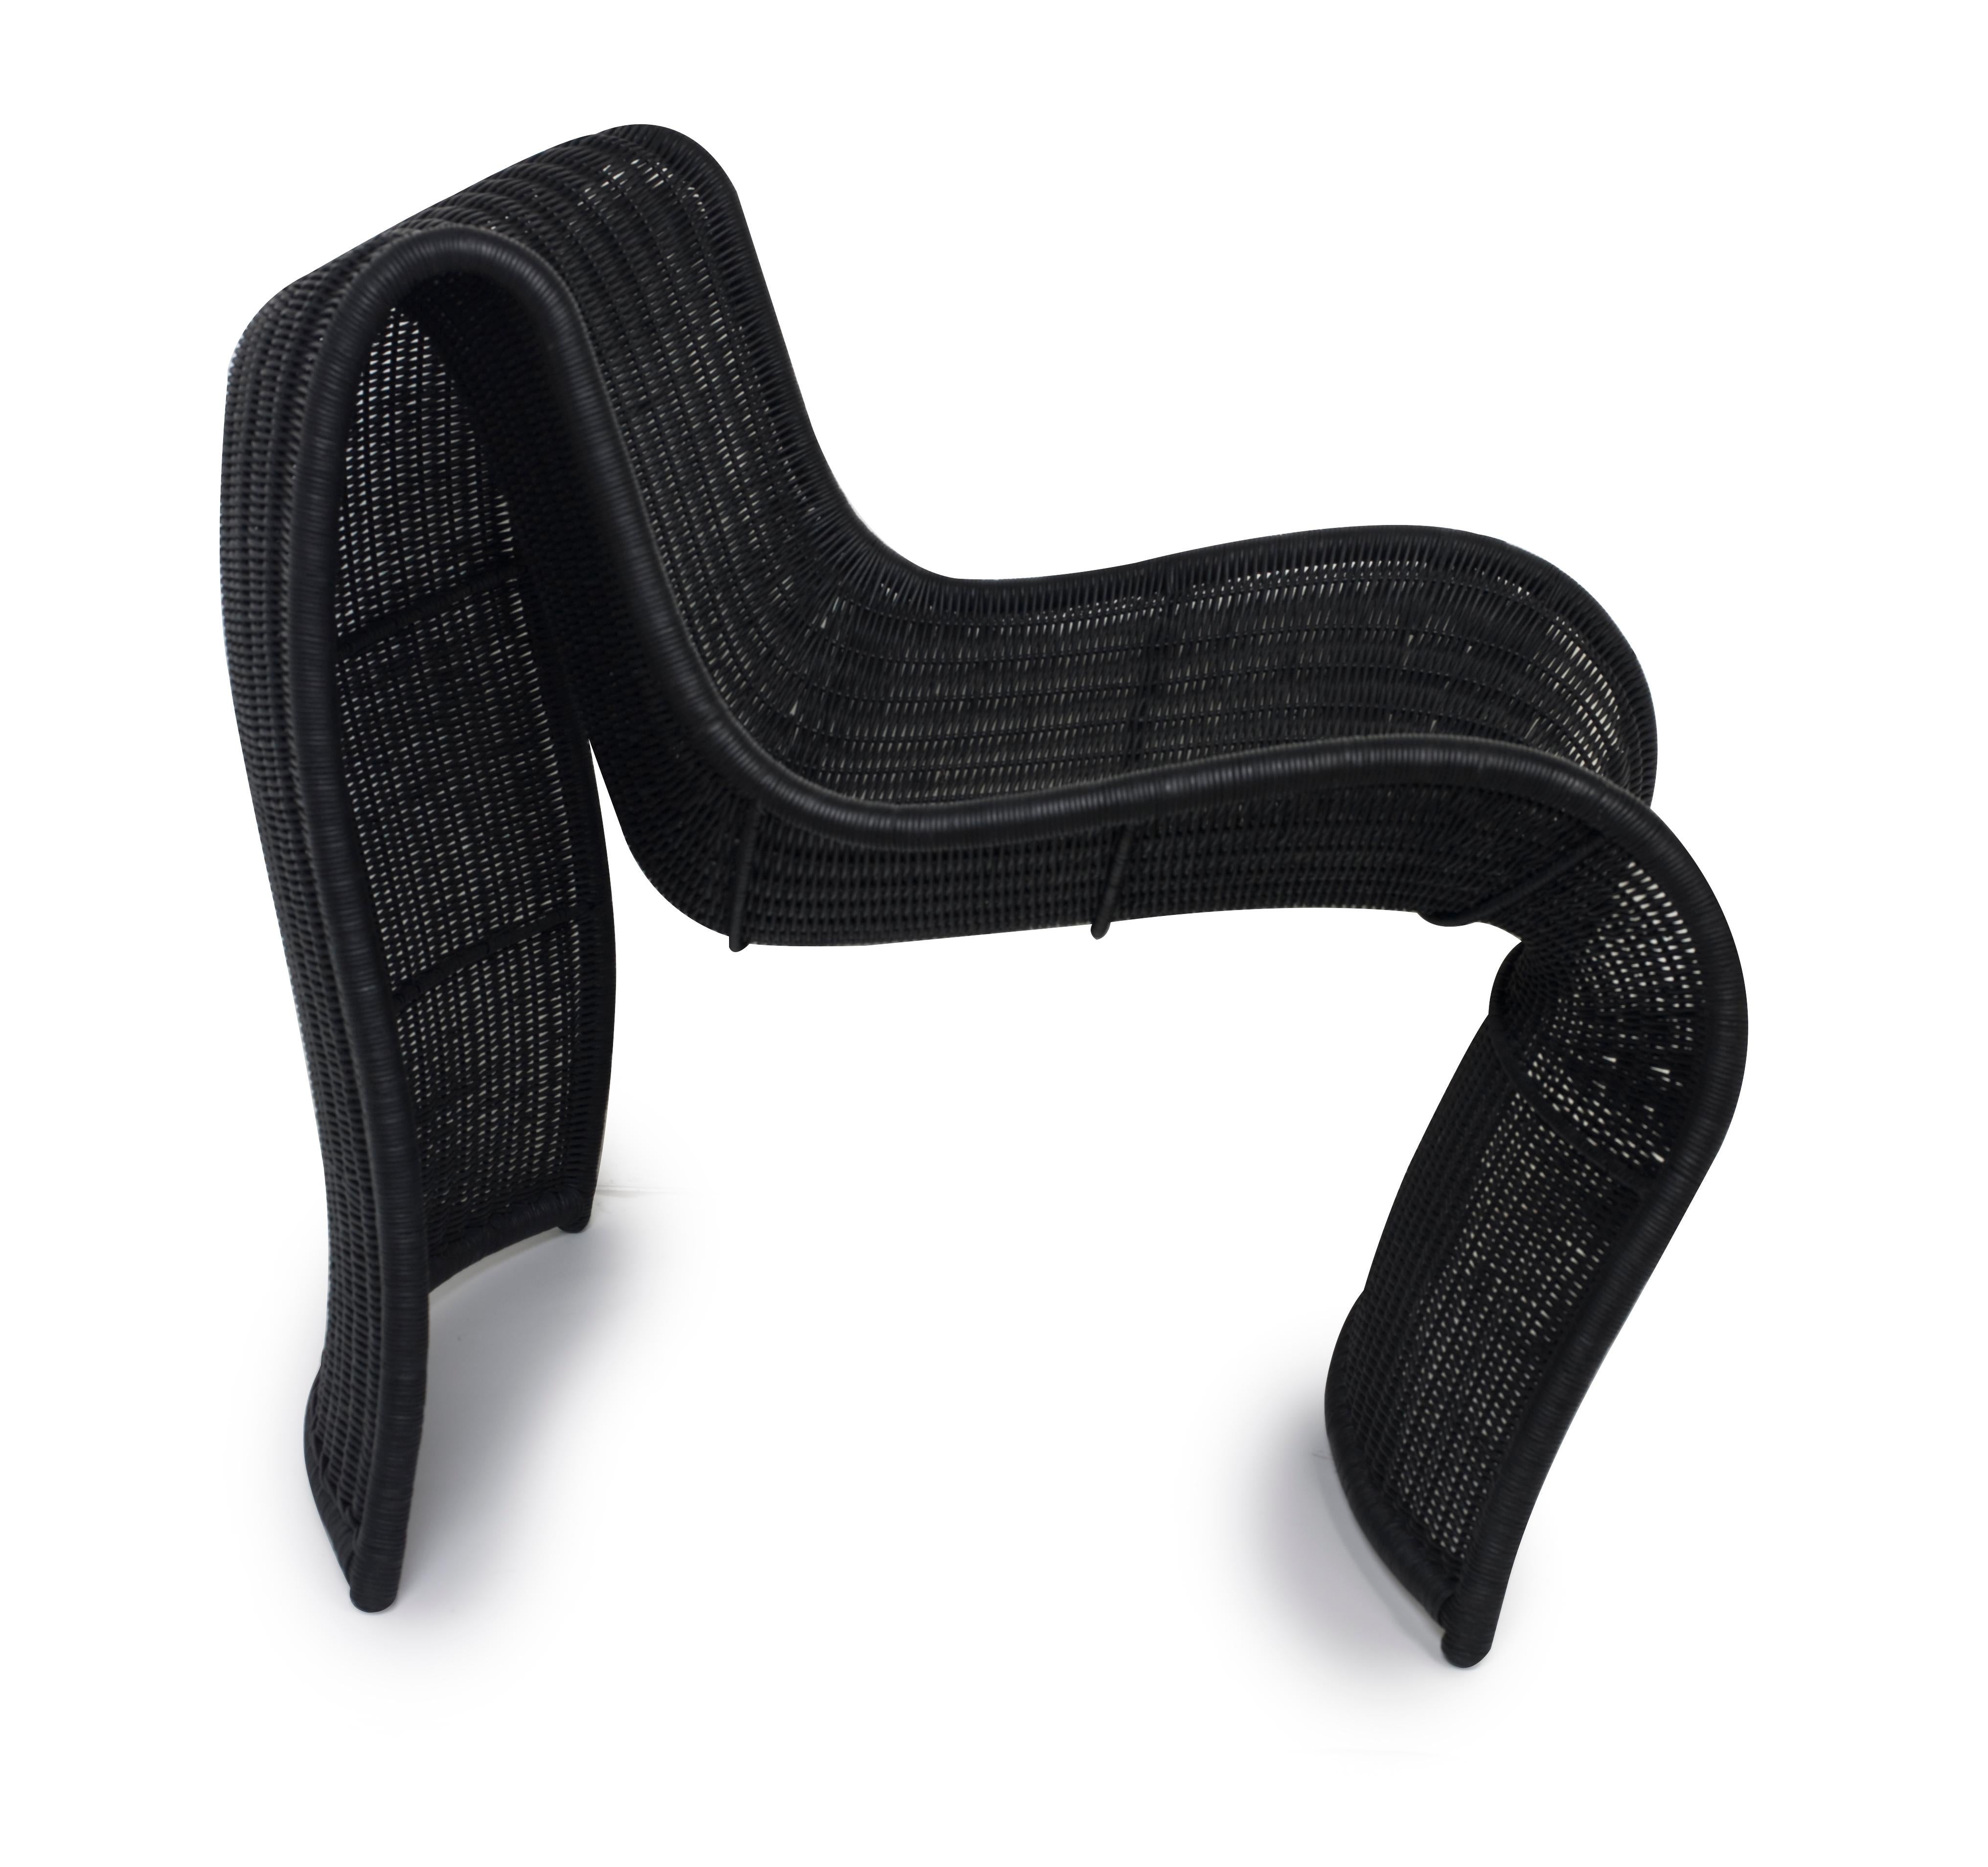 Der Lola-Stuhl ist ein bemerkenswertes Zeugnis für die Schönheit natürlicher MATERIALIEN und fachmännischer Handwerkskunst. Geschickte Kunsthandwerker auf den Philippinen flechten den Stuhl aus Korbgeflecht, der in einer modernen und innovativen